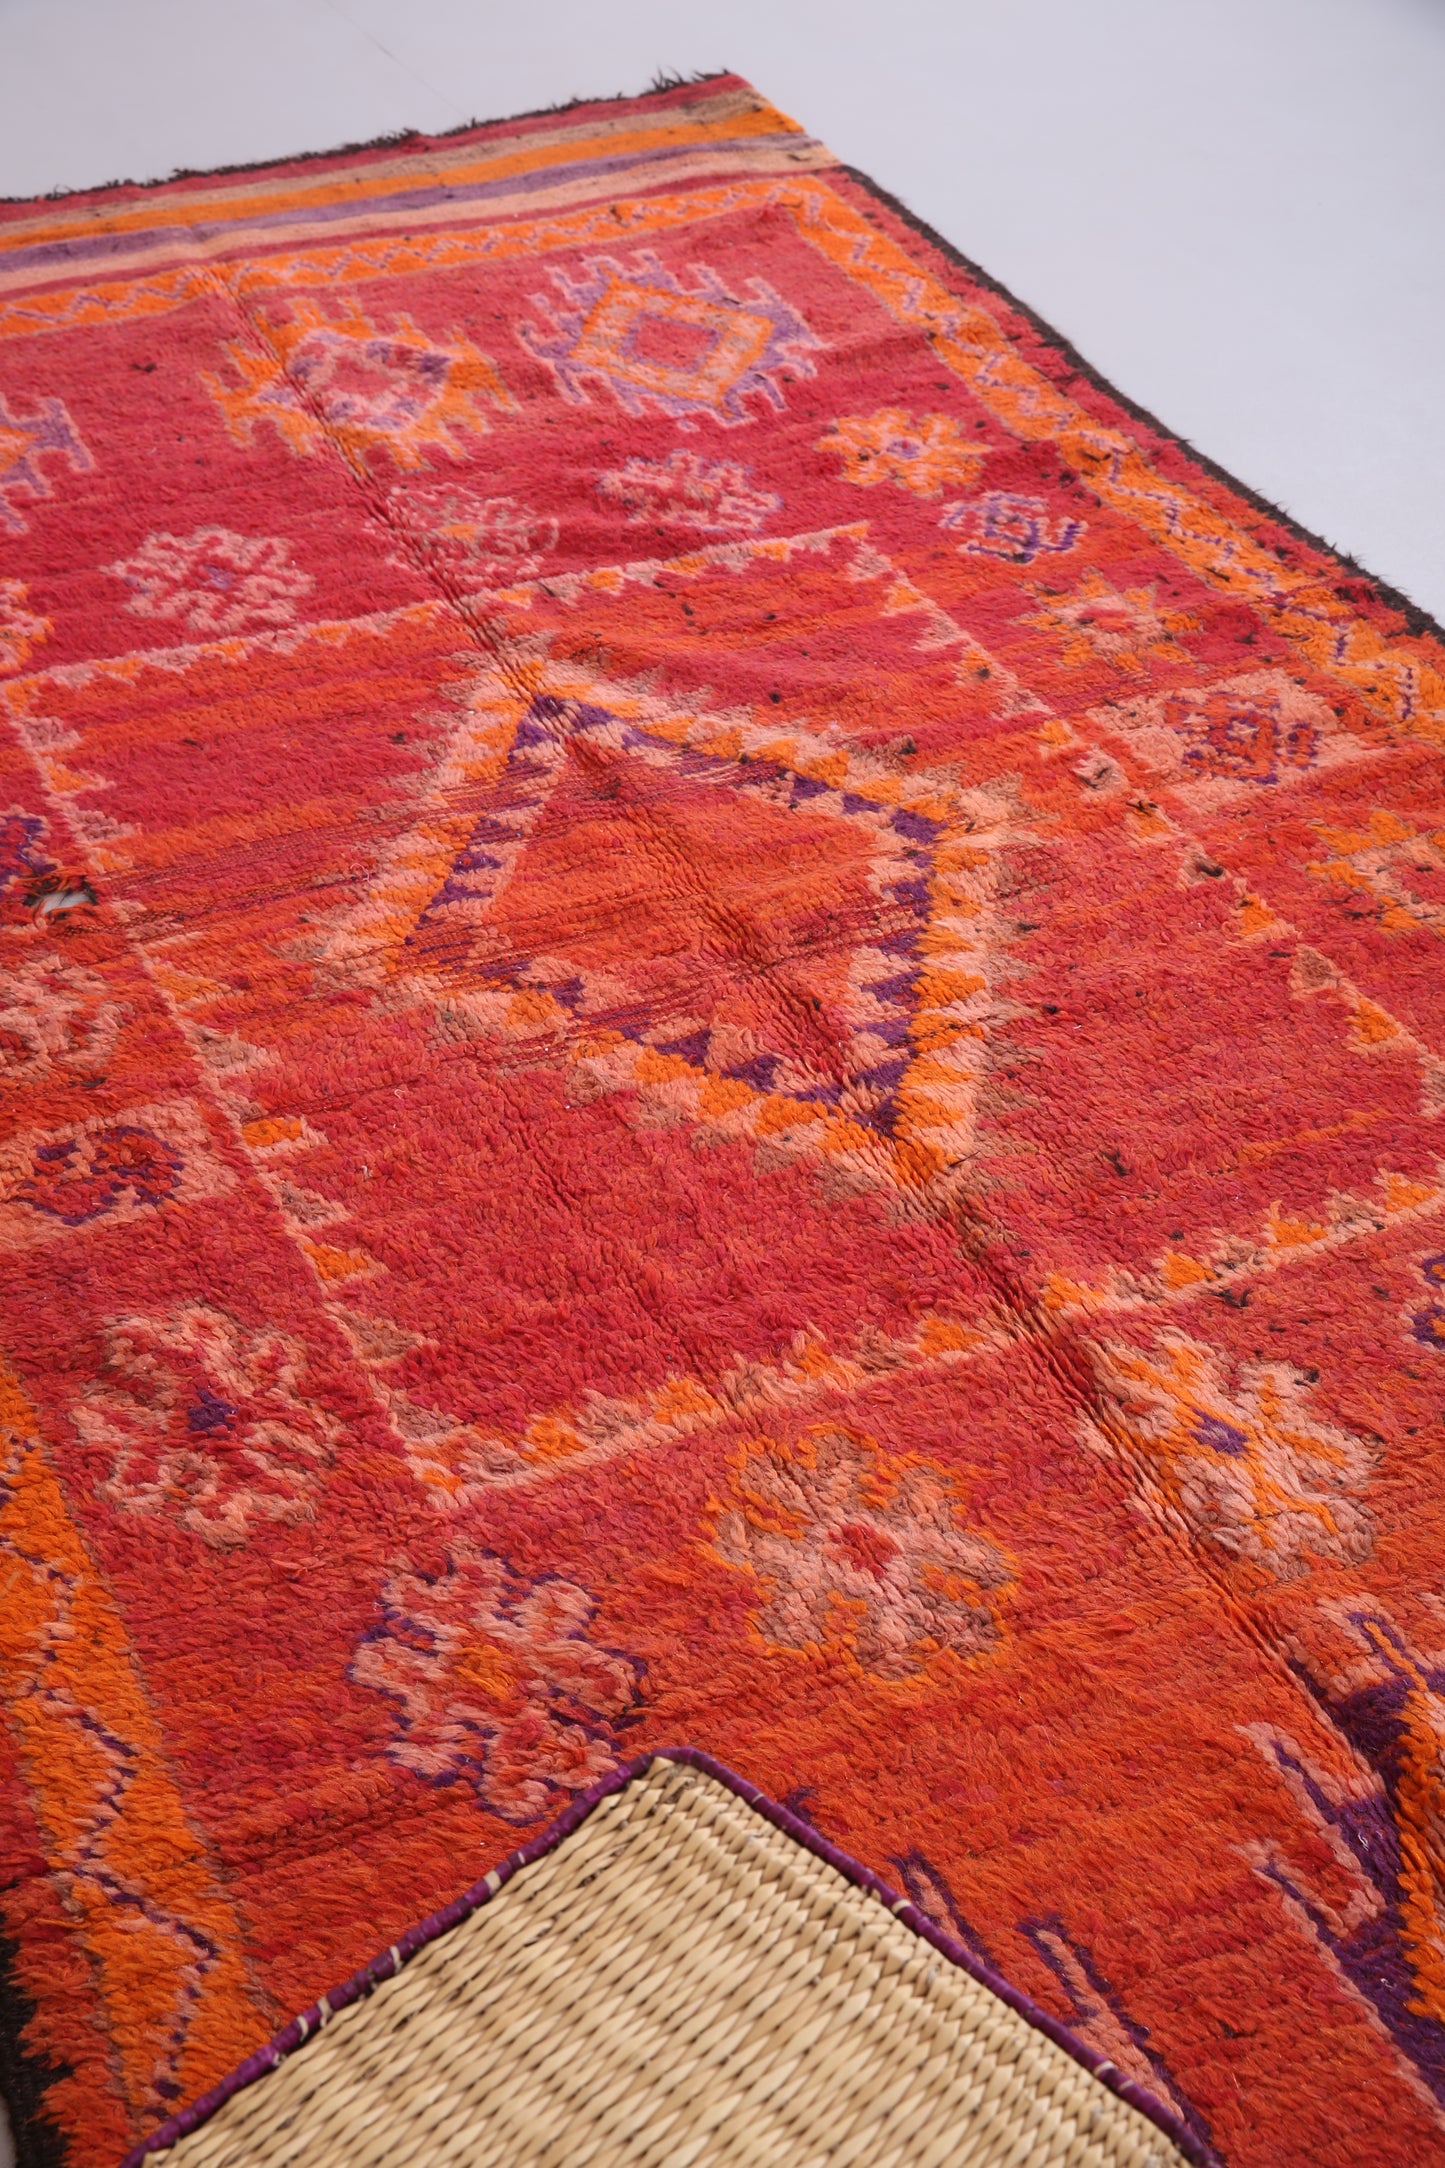 Roter marokkanischer Vintage-Teppich 5,1 FT x 10,7 FT - roter marokkanischer Teppich - Vintage-Tribal-Teppich - handgemachter Berberteppich - einzigartiger Vintage-Teppich - Boho-Teppich